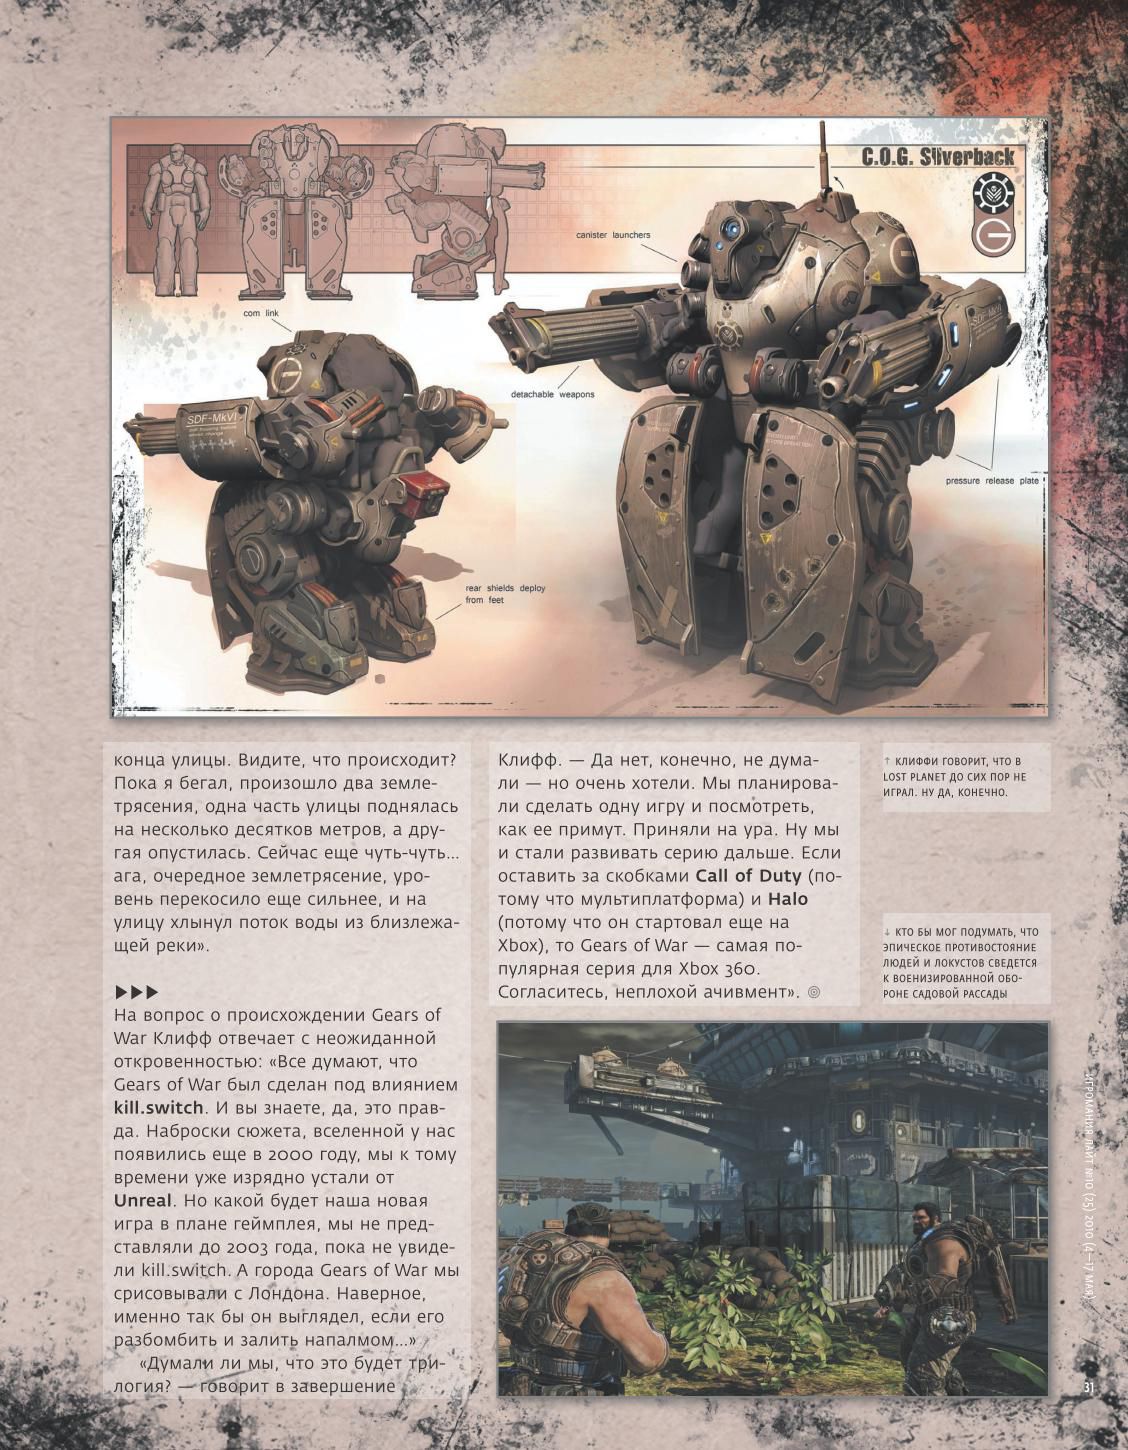 Gears of War 3 - Image 6